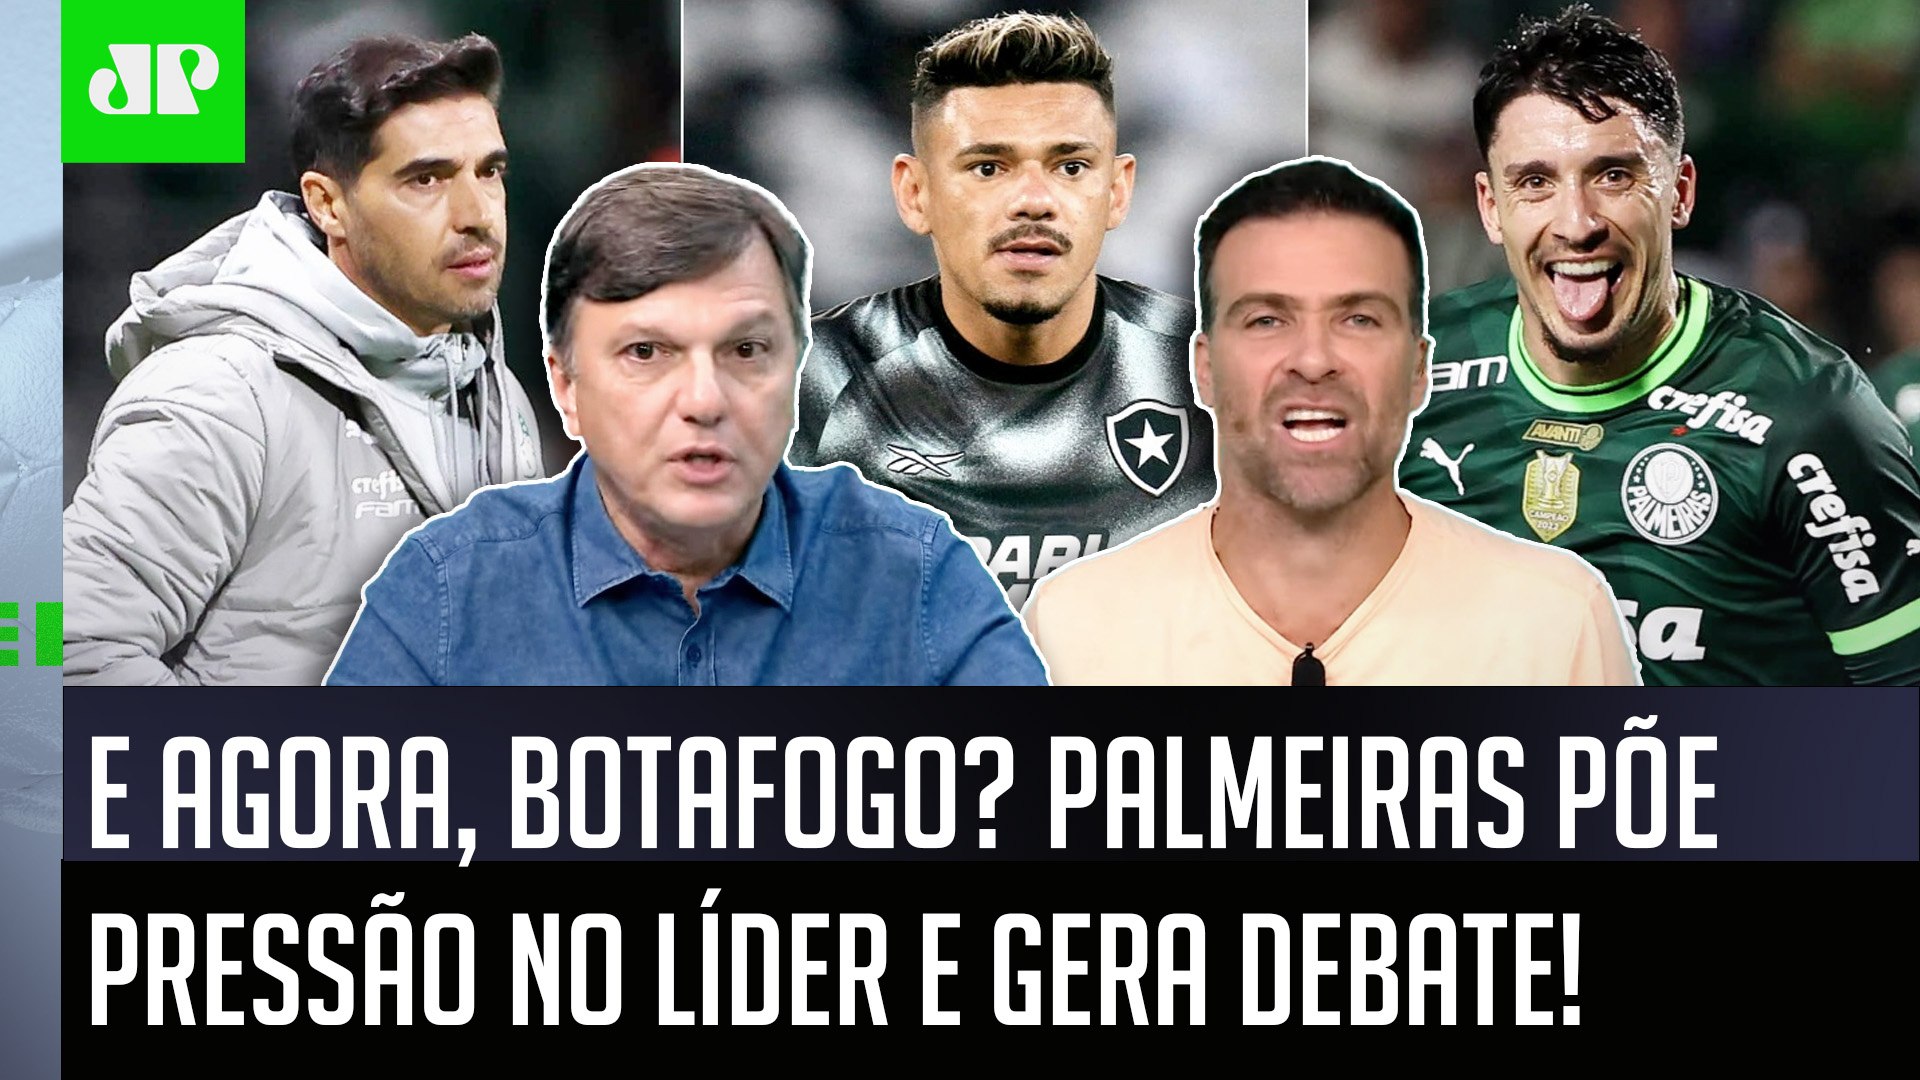 Presidente diz que Palmeiras não tem mundial - Vídeo Dailymotion